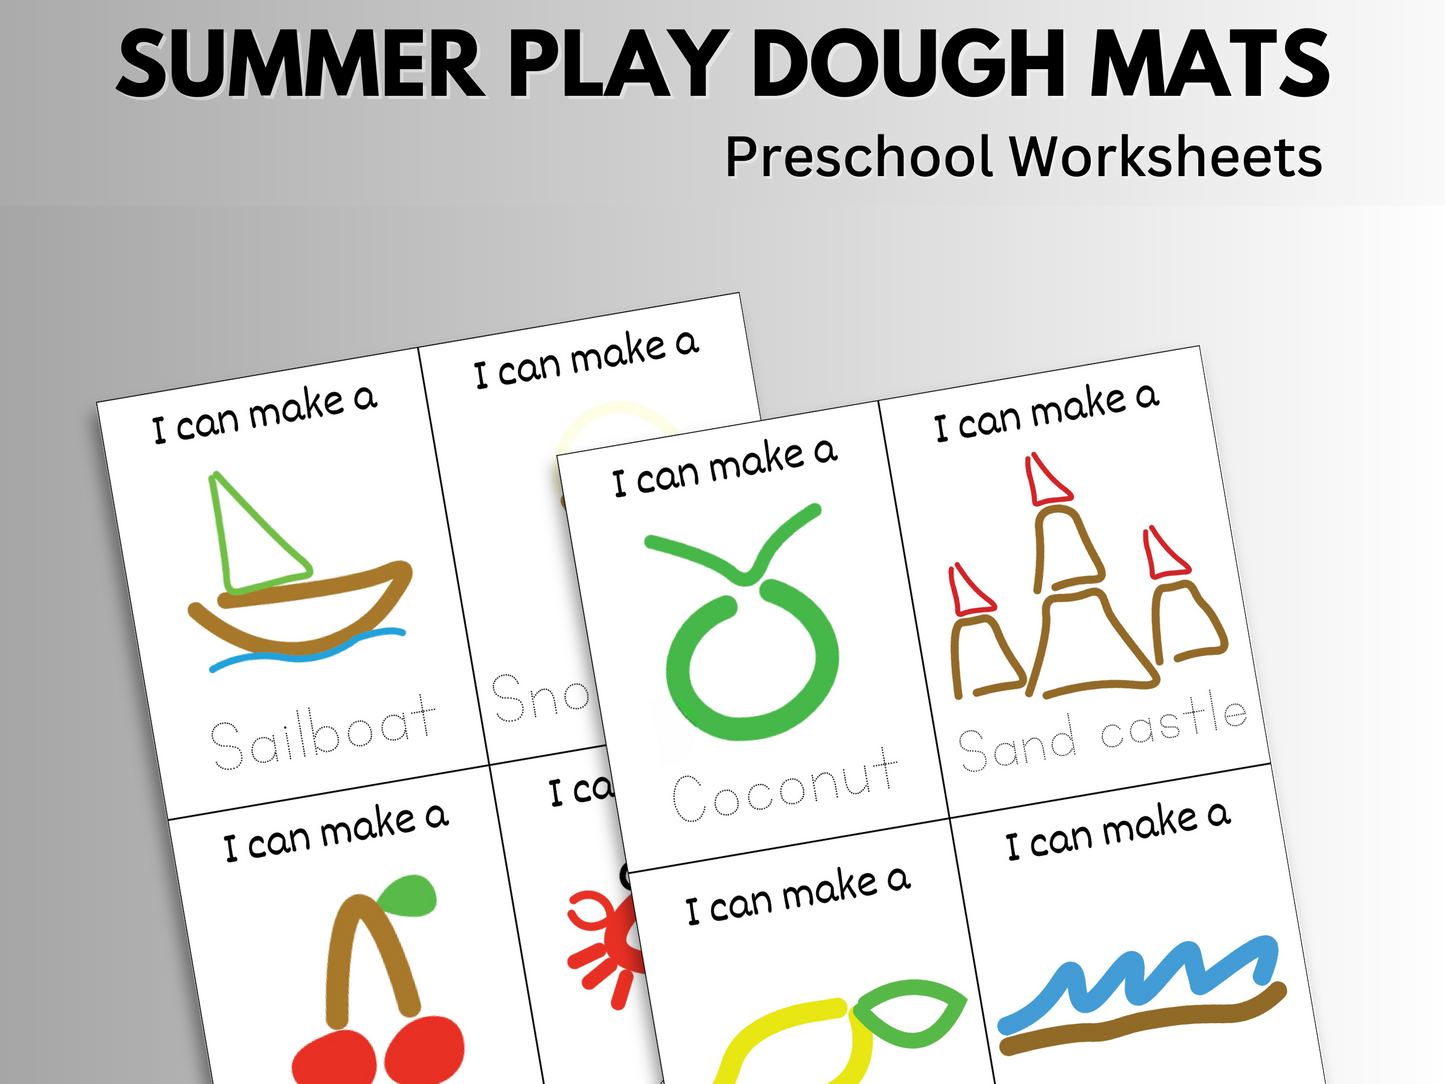 Summer play dough mats preschool worksheets showing 8 different designs.